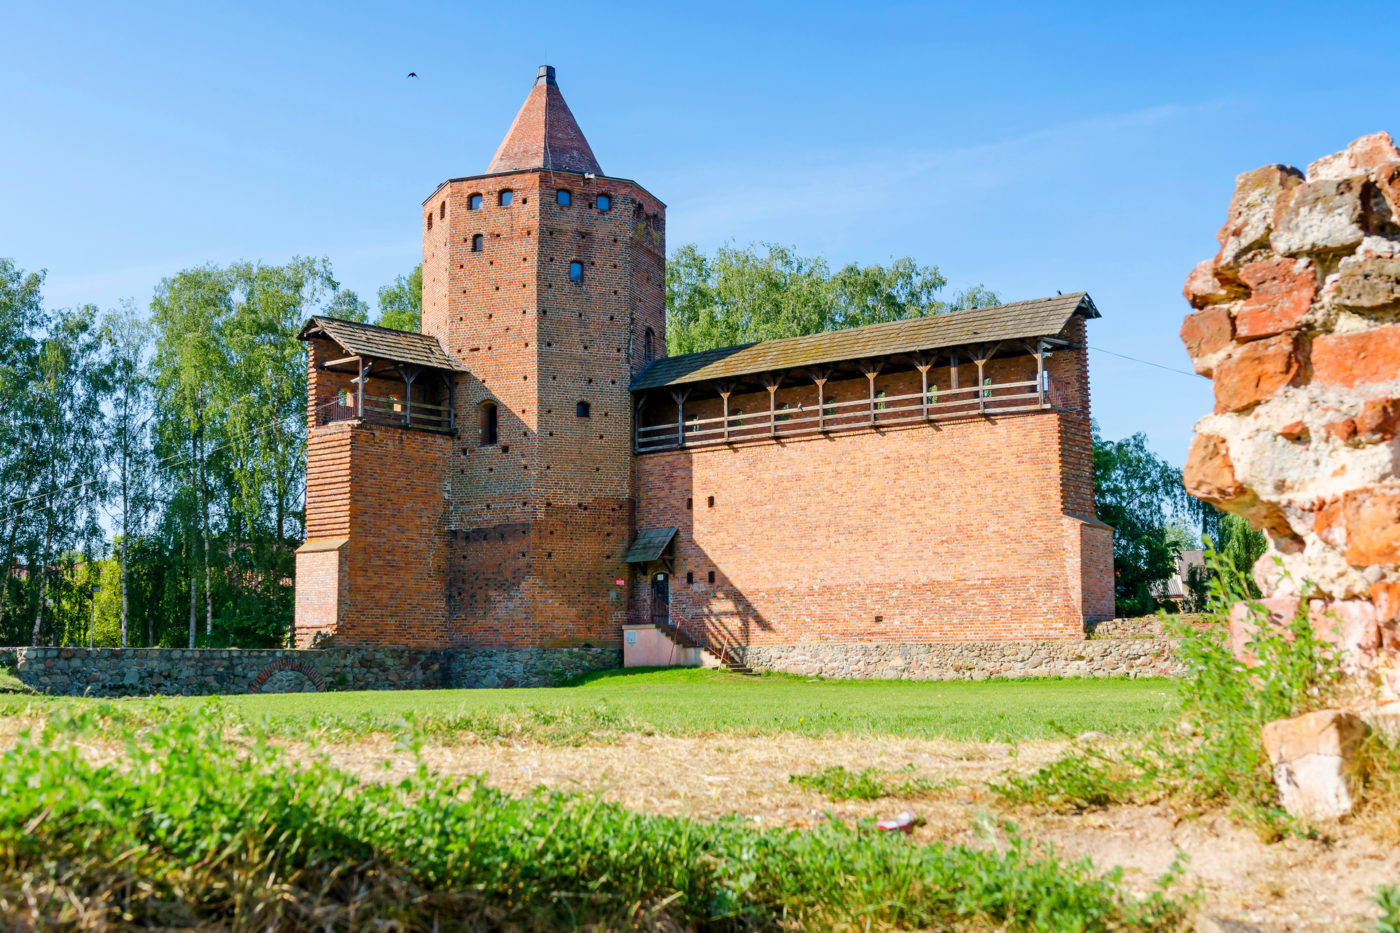 Zamek książąt mazowieckich w Rawie Mazowieckiej, zamki na Mazowszu